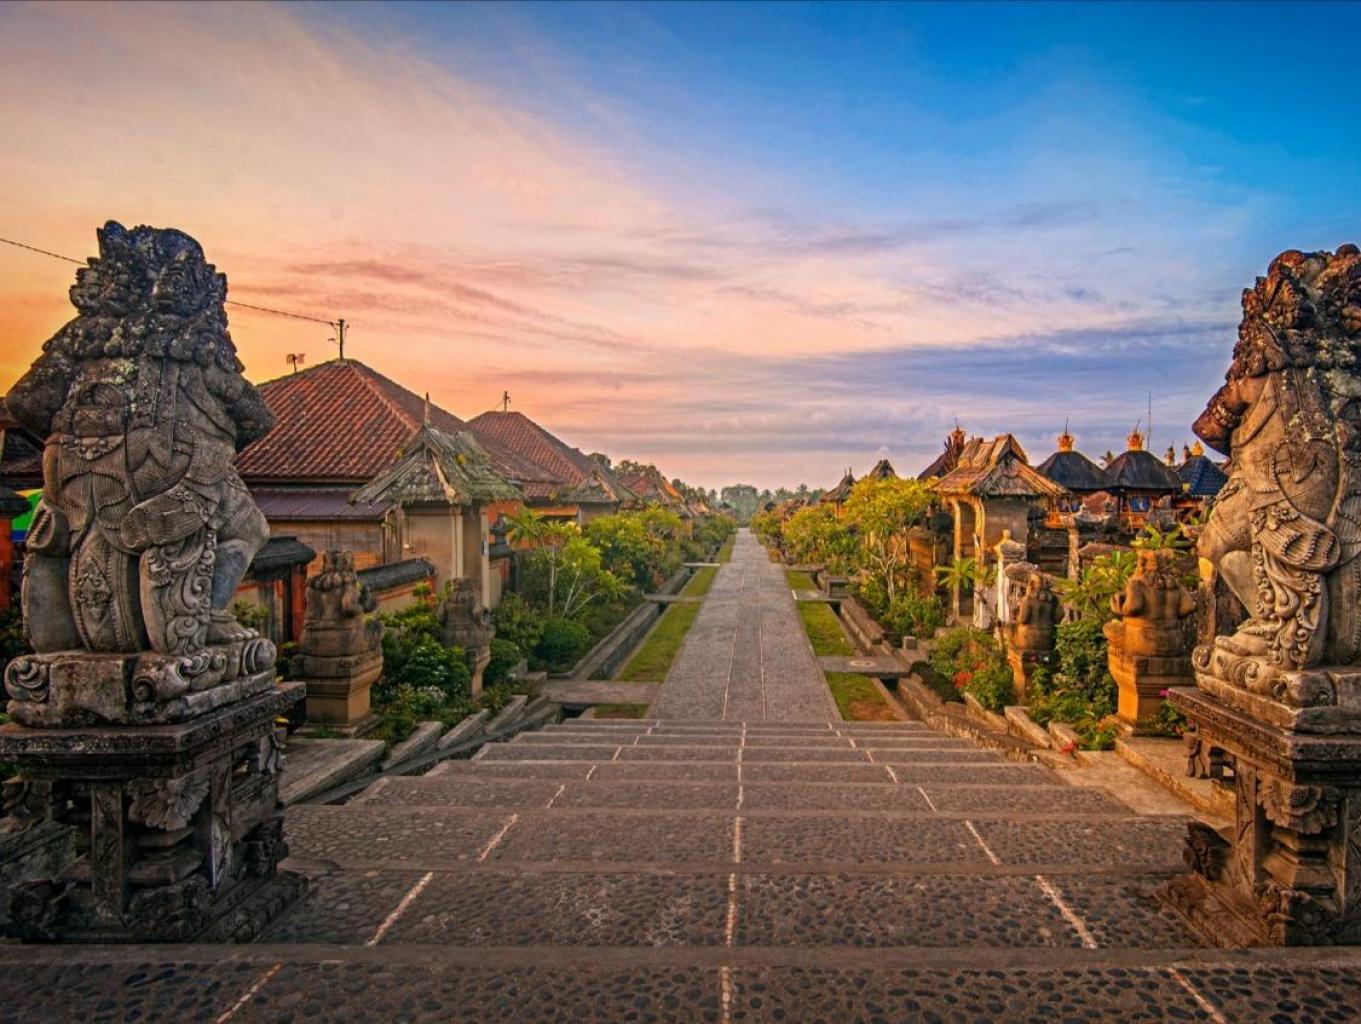 Desa Terbersih Di Dunia Ada di Indonesia Loh, Berikut Ulasan Desa Penglipuran Bali!